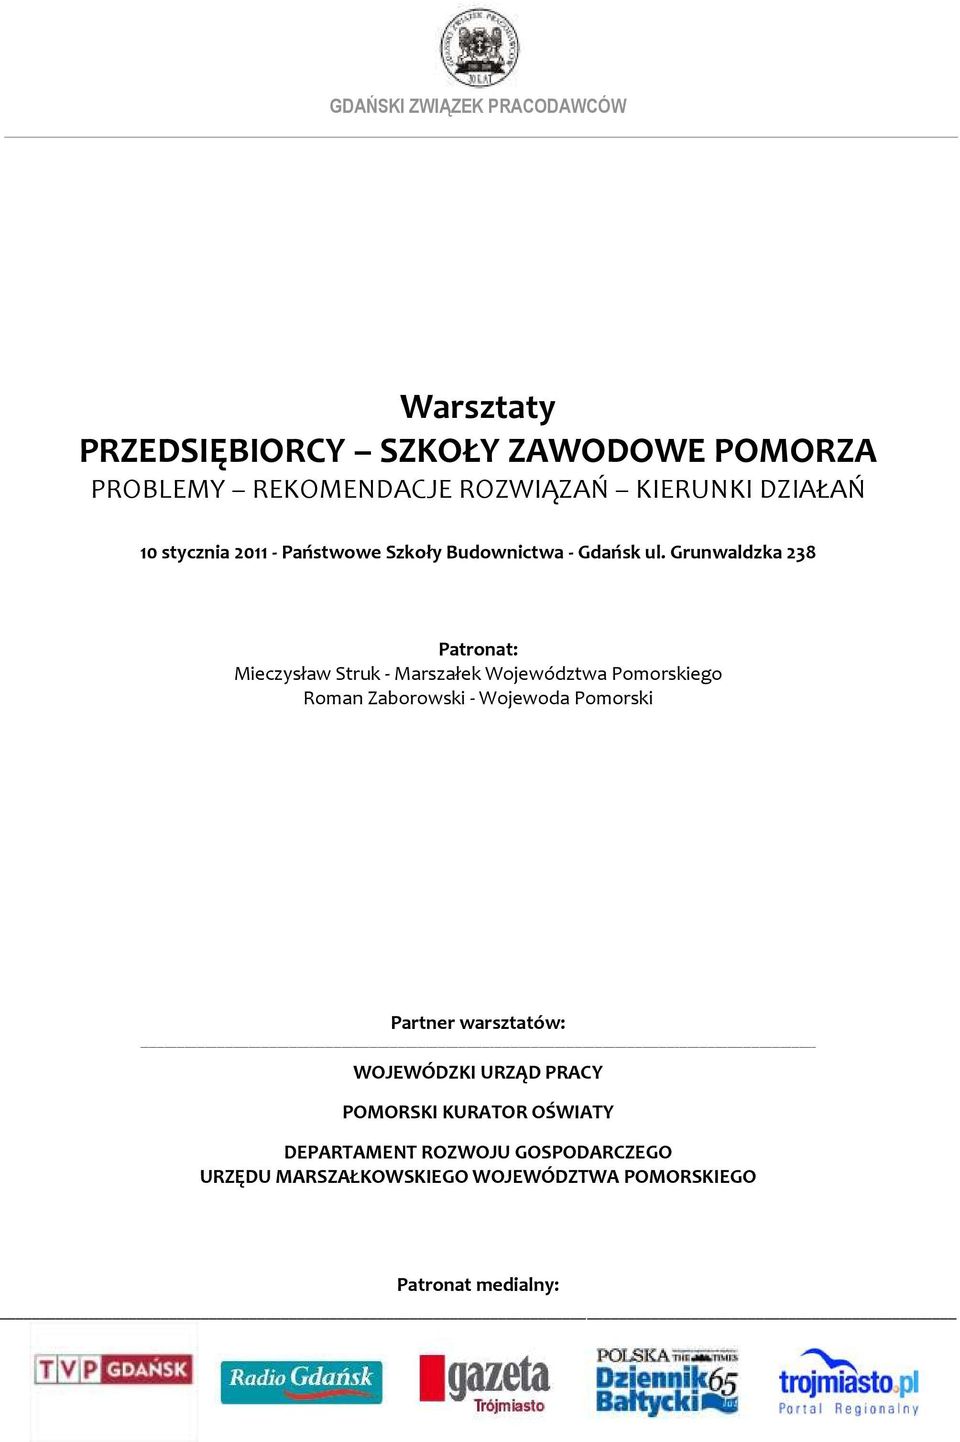 Grunwaldzka 238 Patronat: Mieczysław Struk - Marszałek Województwa Pomorskiego Roman Zaborowski - Wojewoda